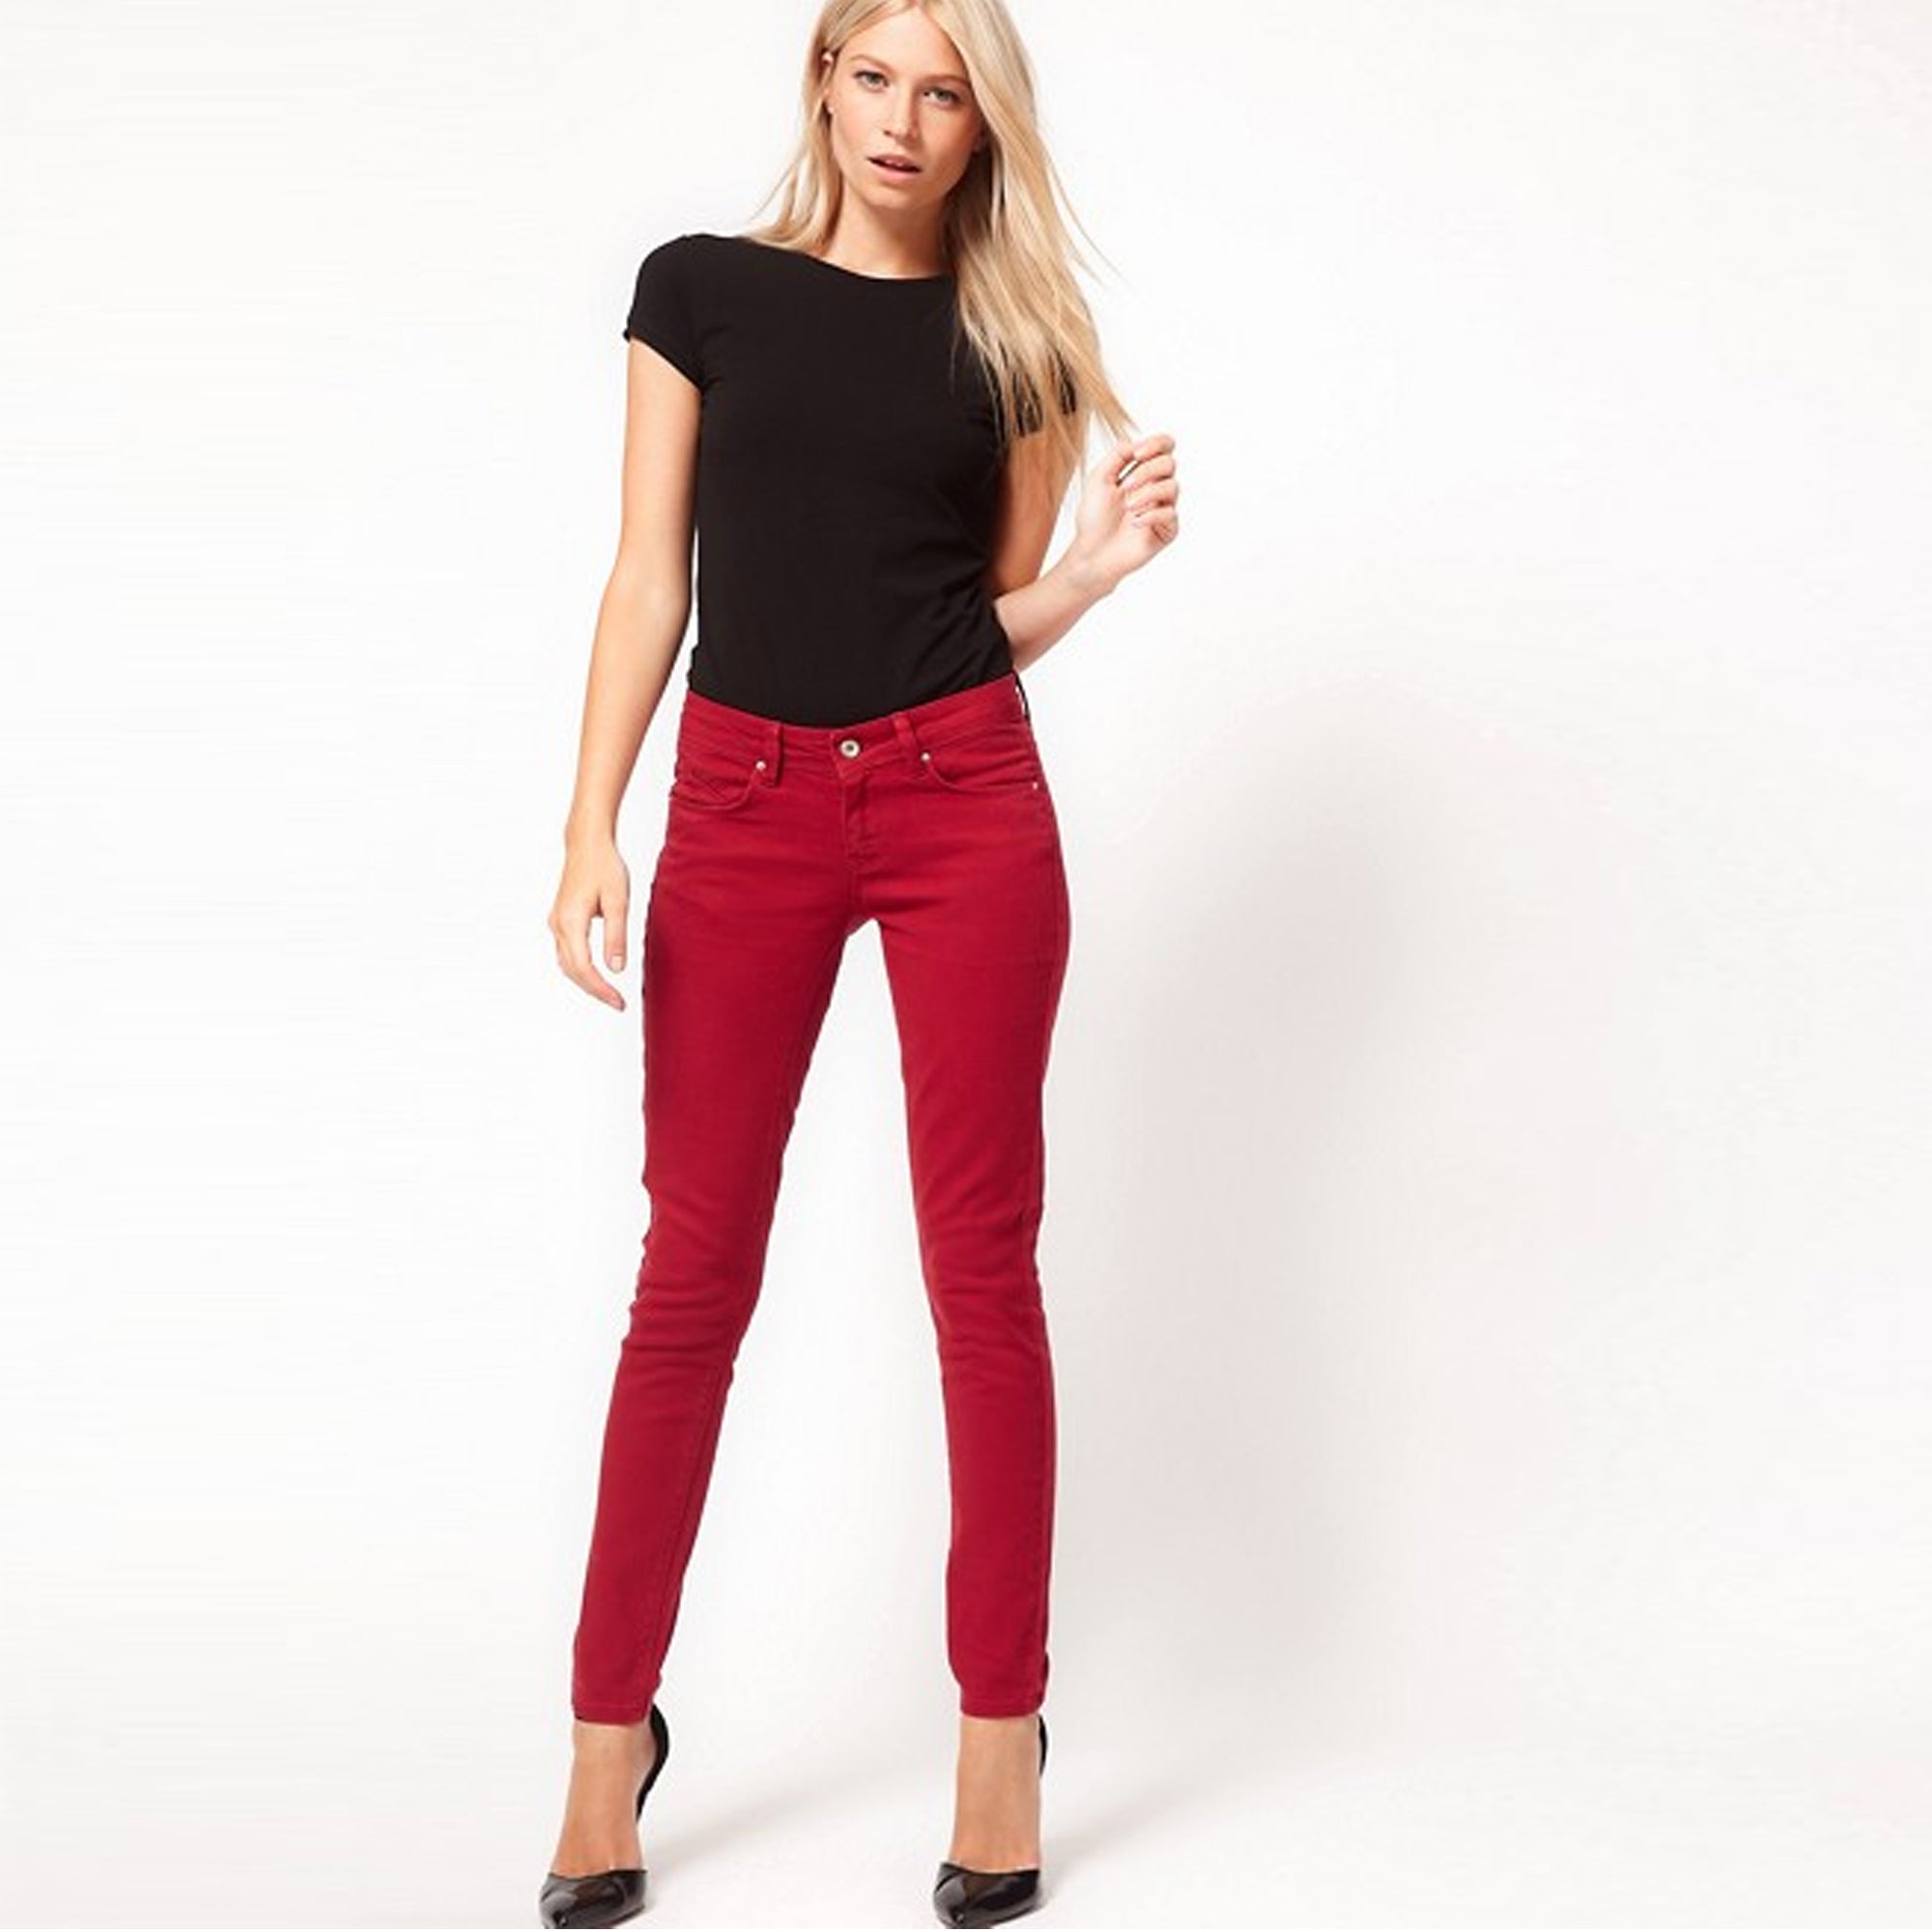 S.P.R.I.N.G.F.I.E.L.D - Women 'Red' Skinny Fit Jeans SF07 - greenshoppy.com